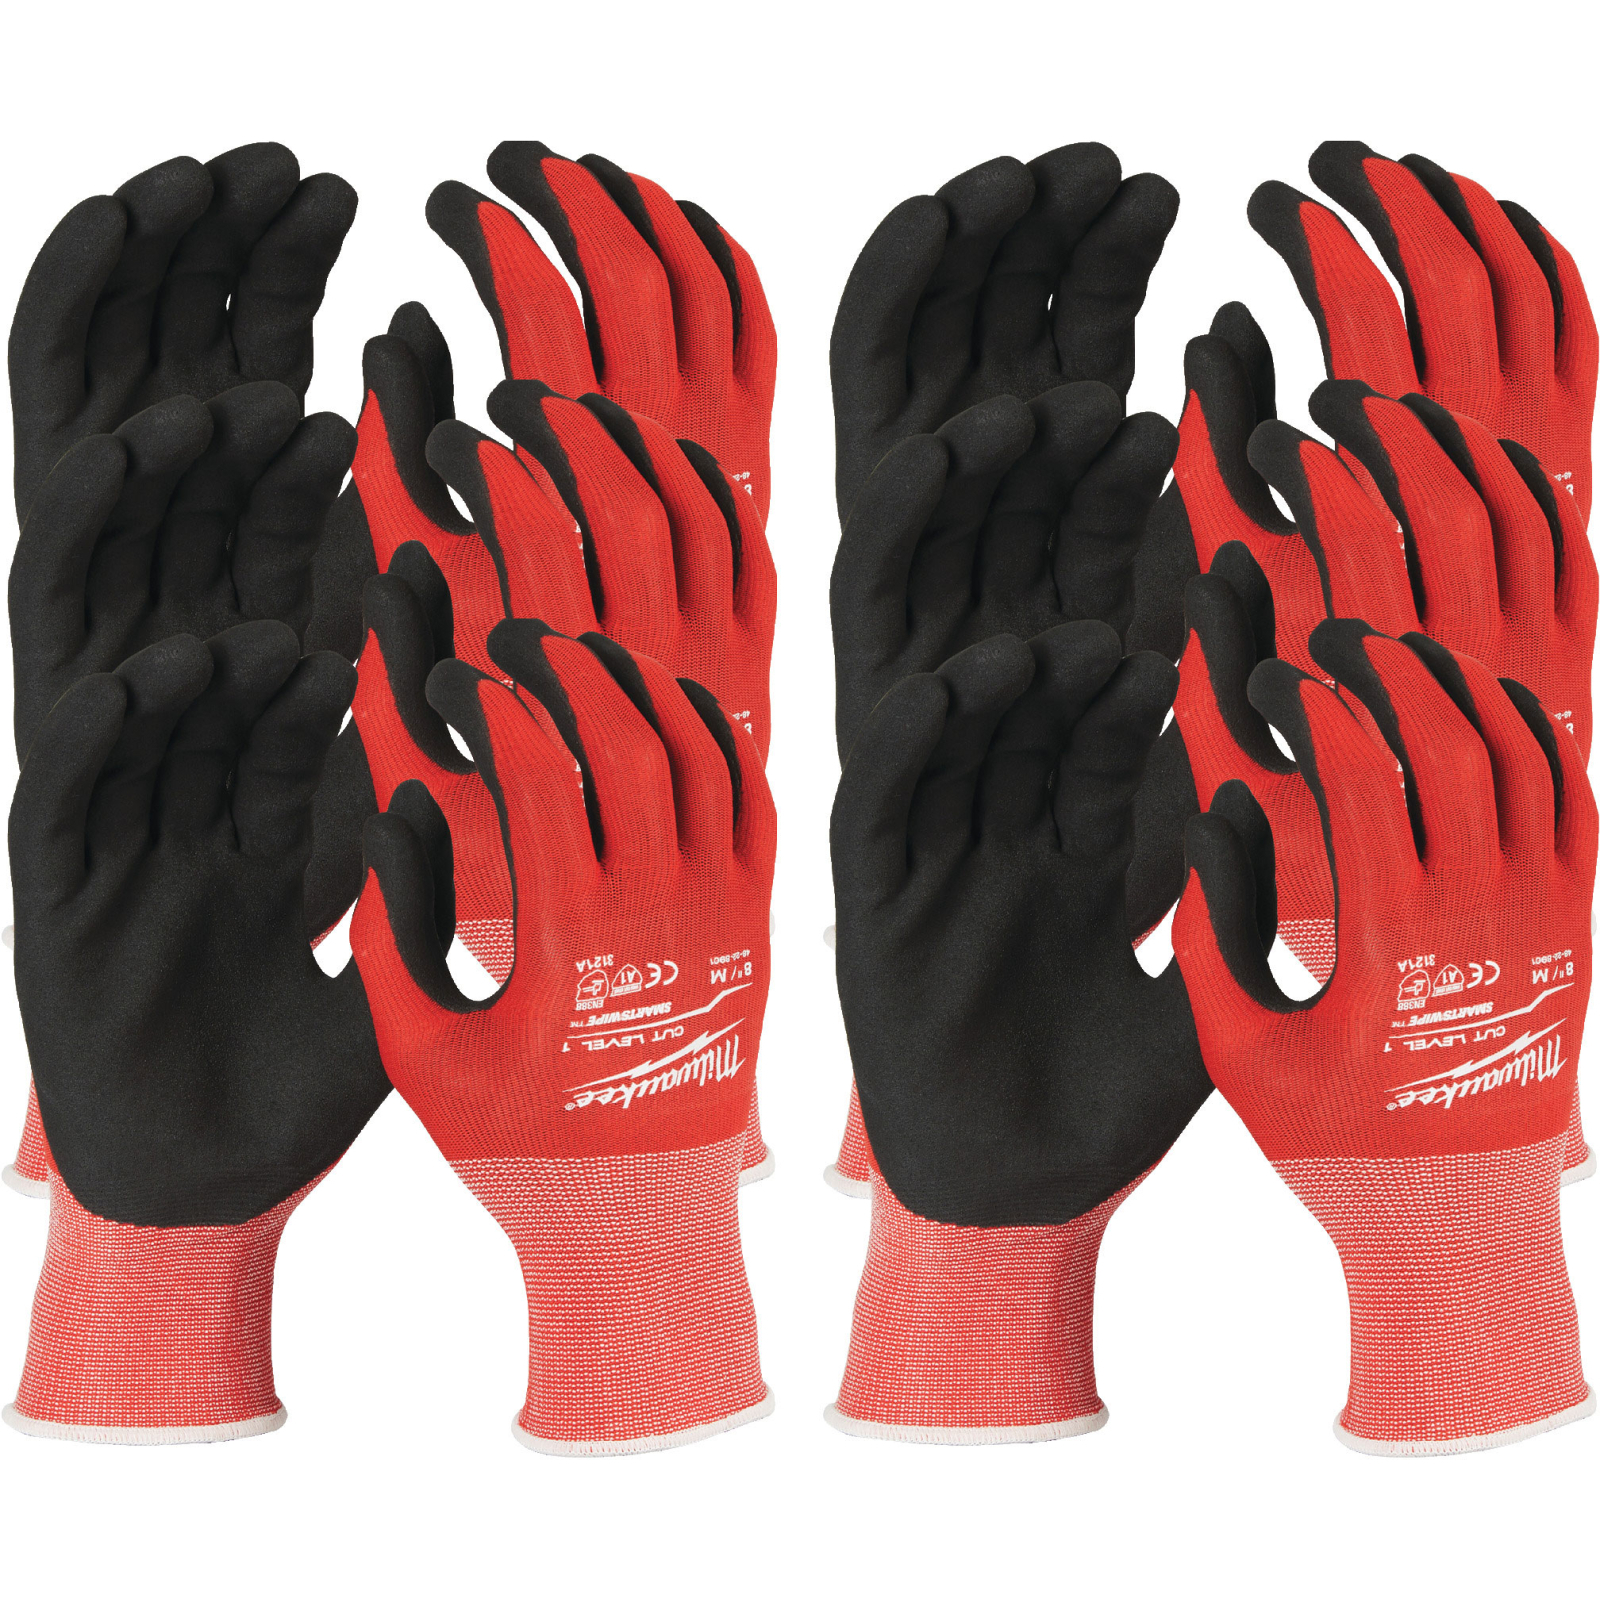 Захисні рукавиці Milwaukee з опором порізам 1 рівня, 10/XL, 12 пар (4932471616)